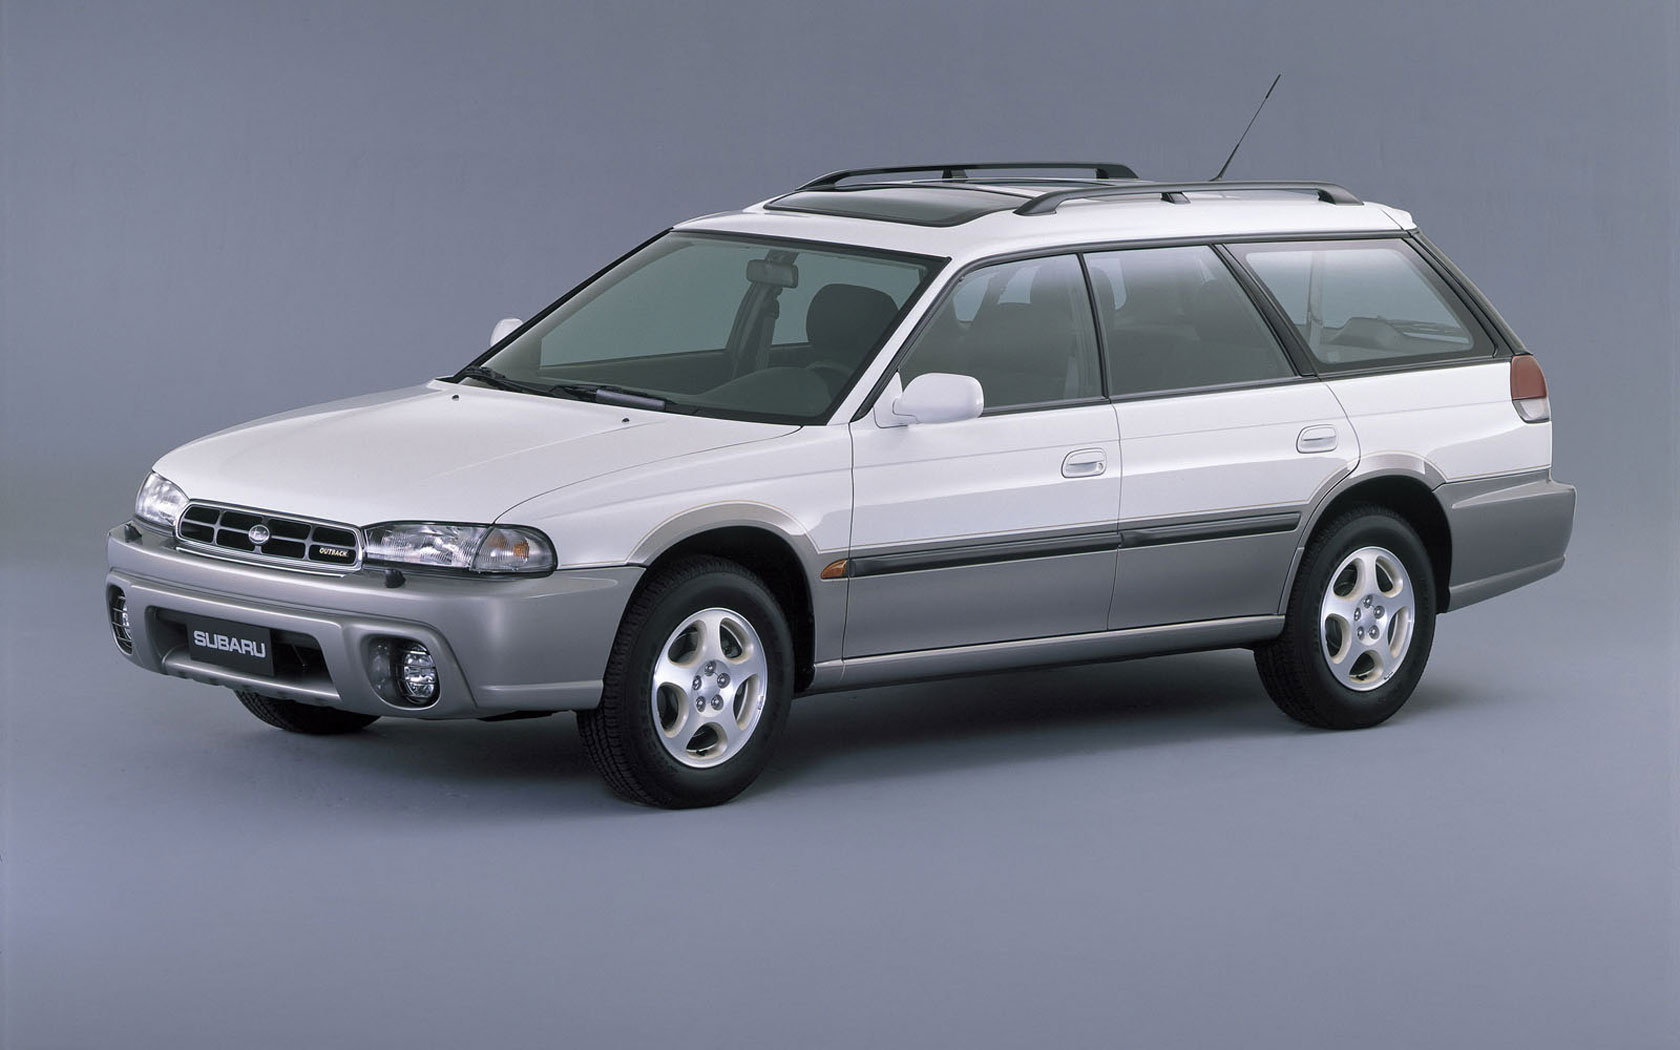  Subaru Legacy Outback (1994-1999)